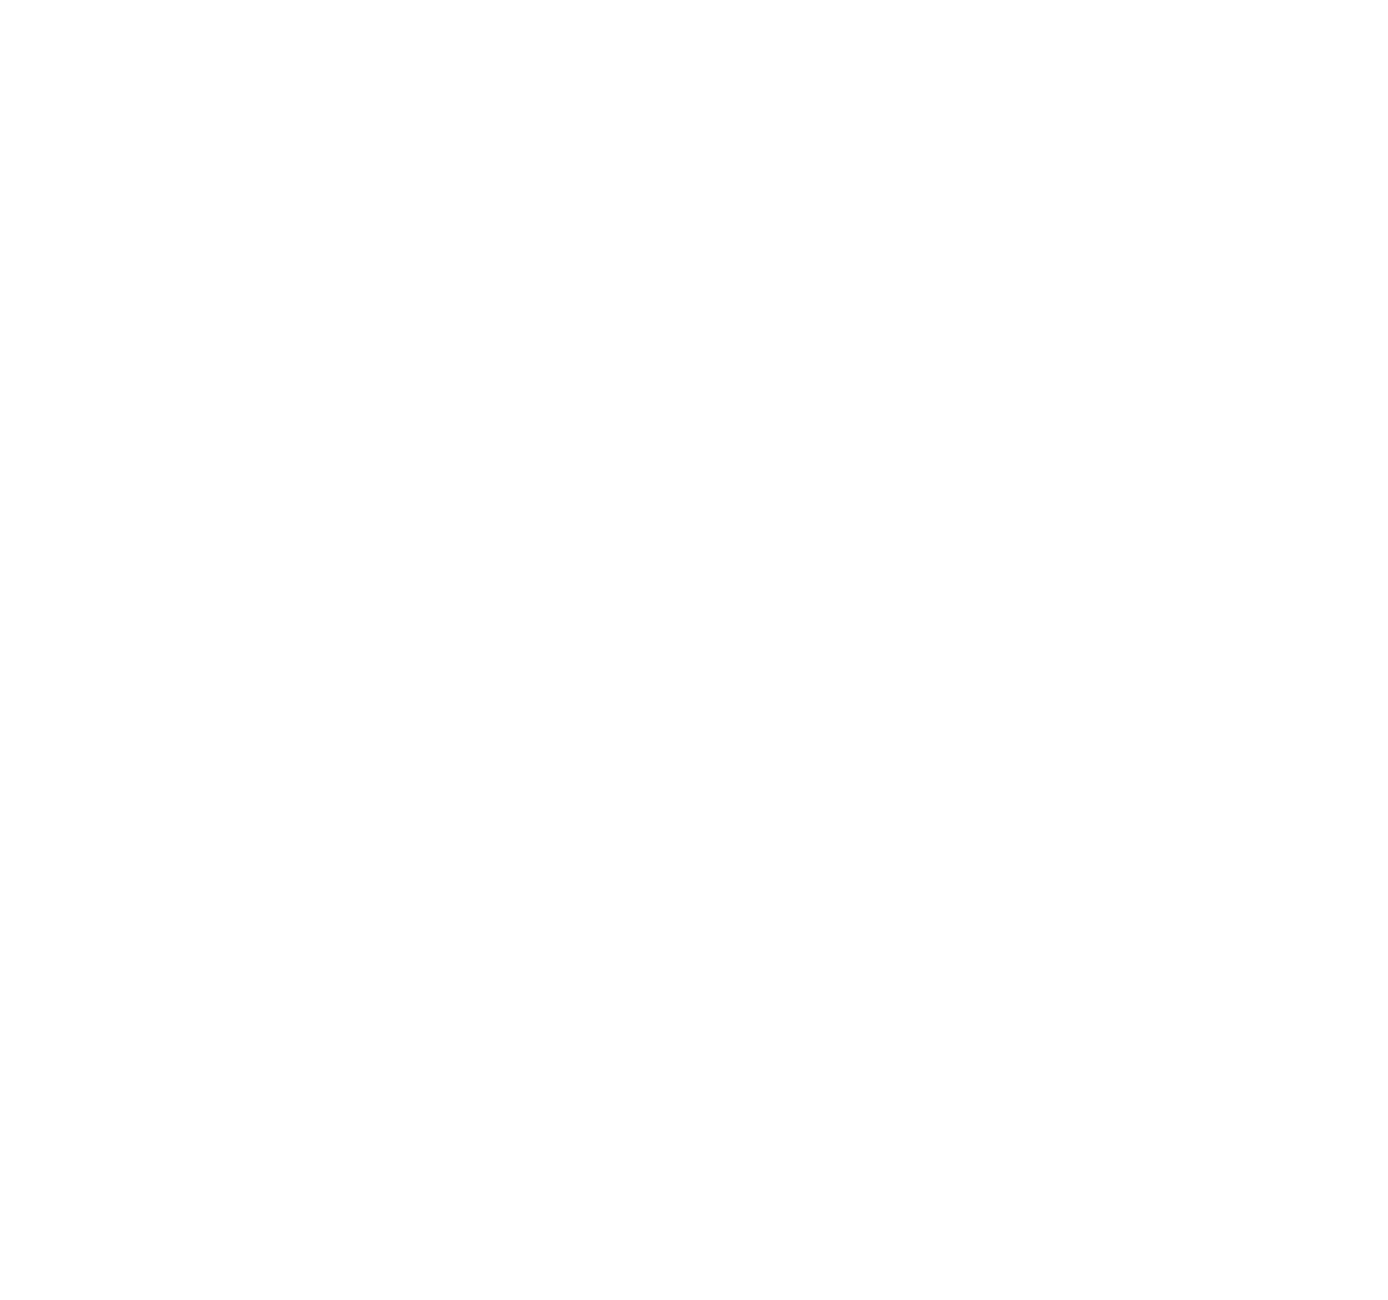 Tecnica e Curso Bebê silicone Reborn